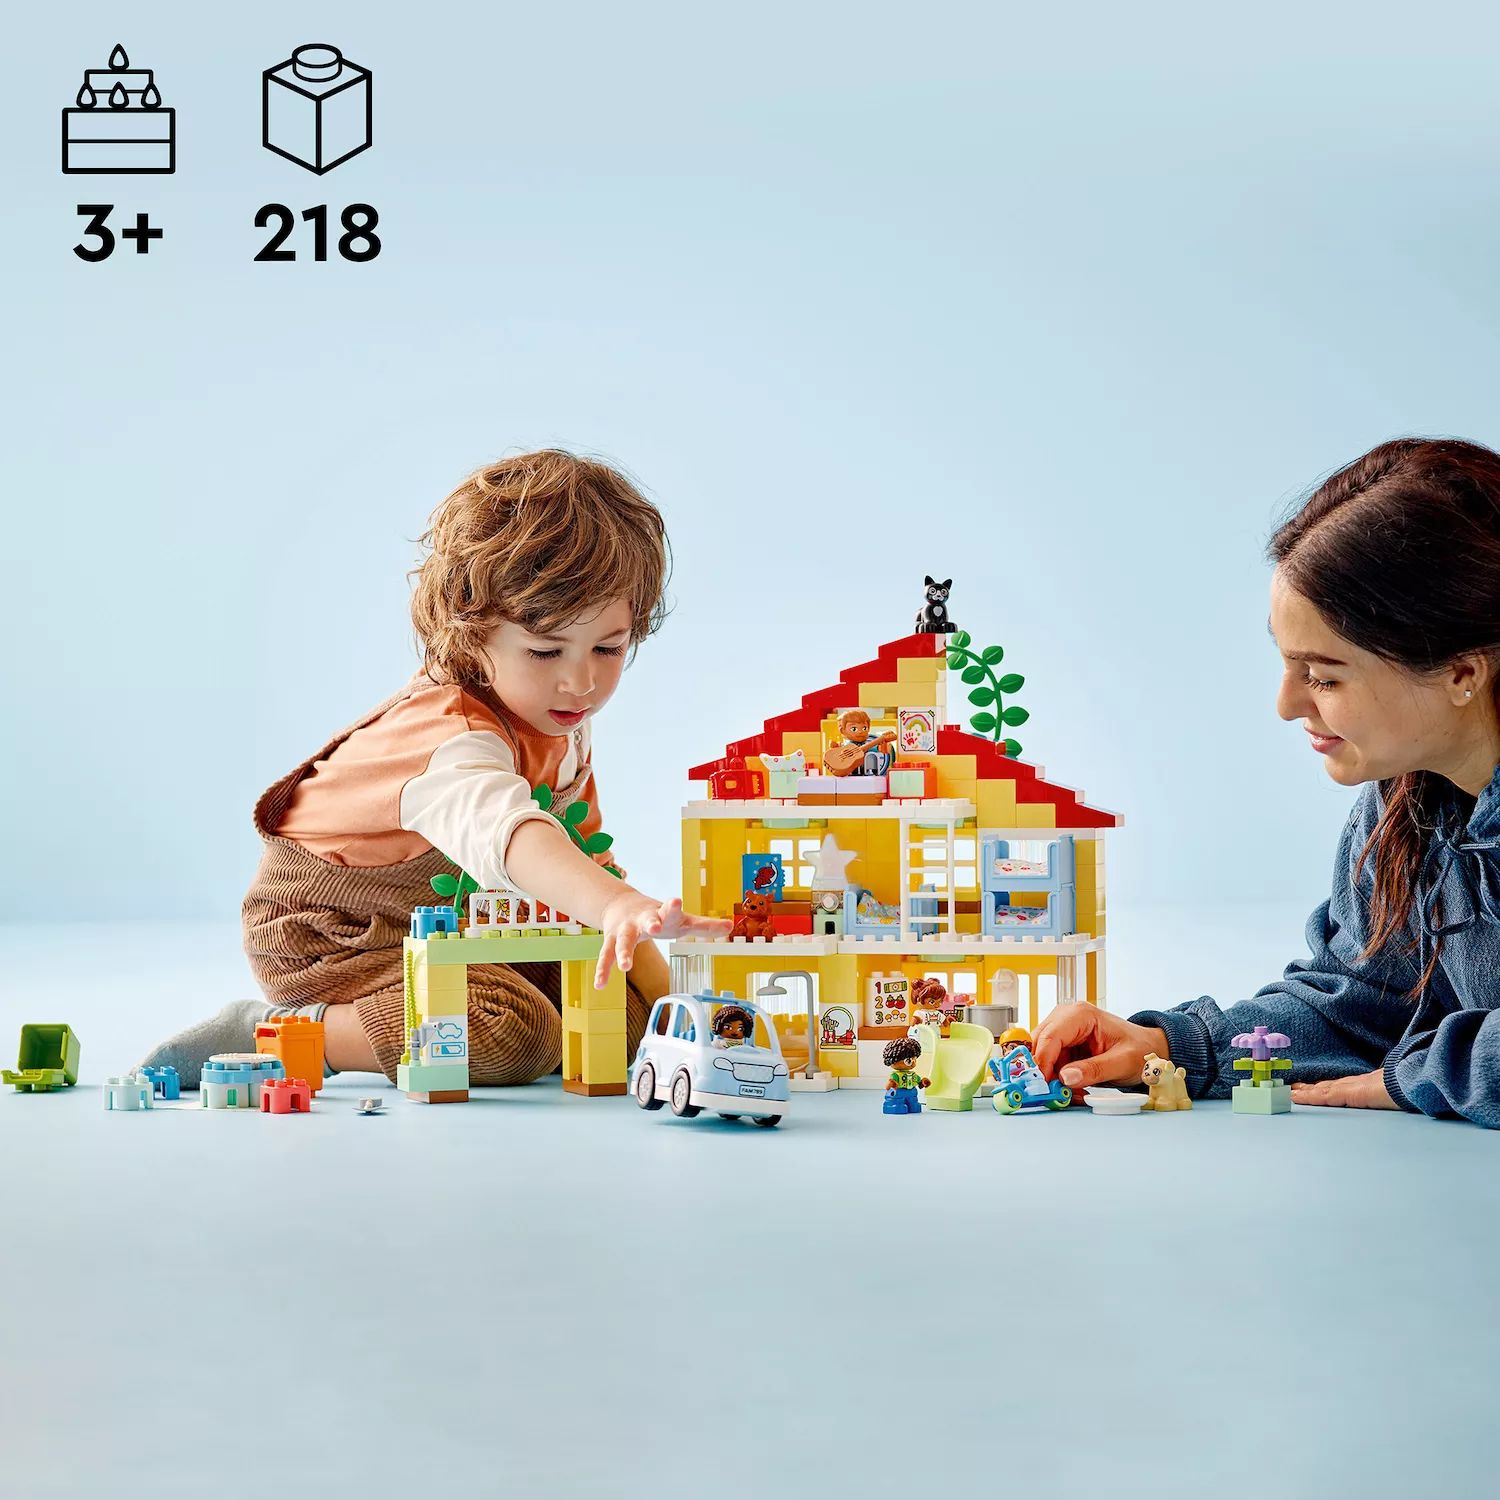 LEGO DUPLO Town 3-в-1 Семейный дом «Притворись» 10994 Набор игрушек для сборки (218 деталей) LEGO конструктор lego duplo 10994 семейный дом 3в1